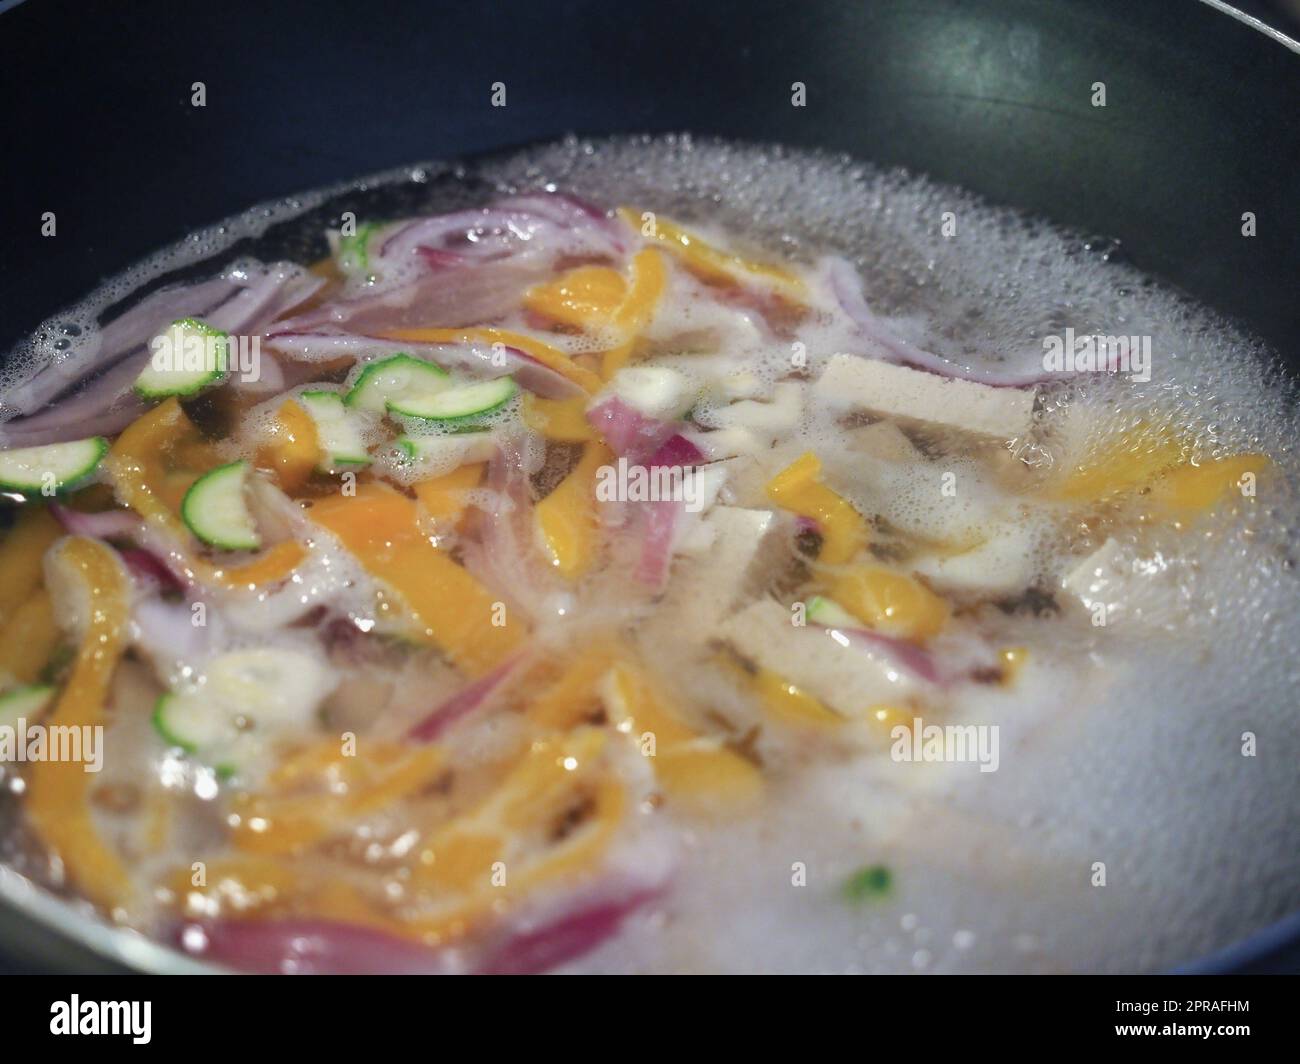 préparation de nourriture asiatique Photo Stock - Alamy